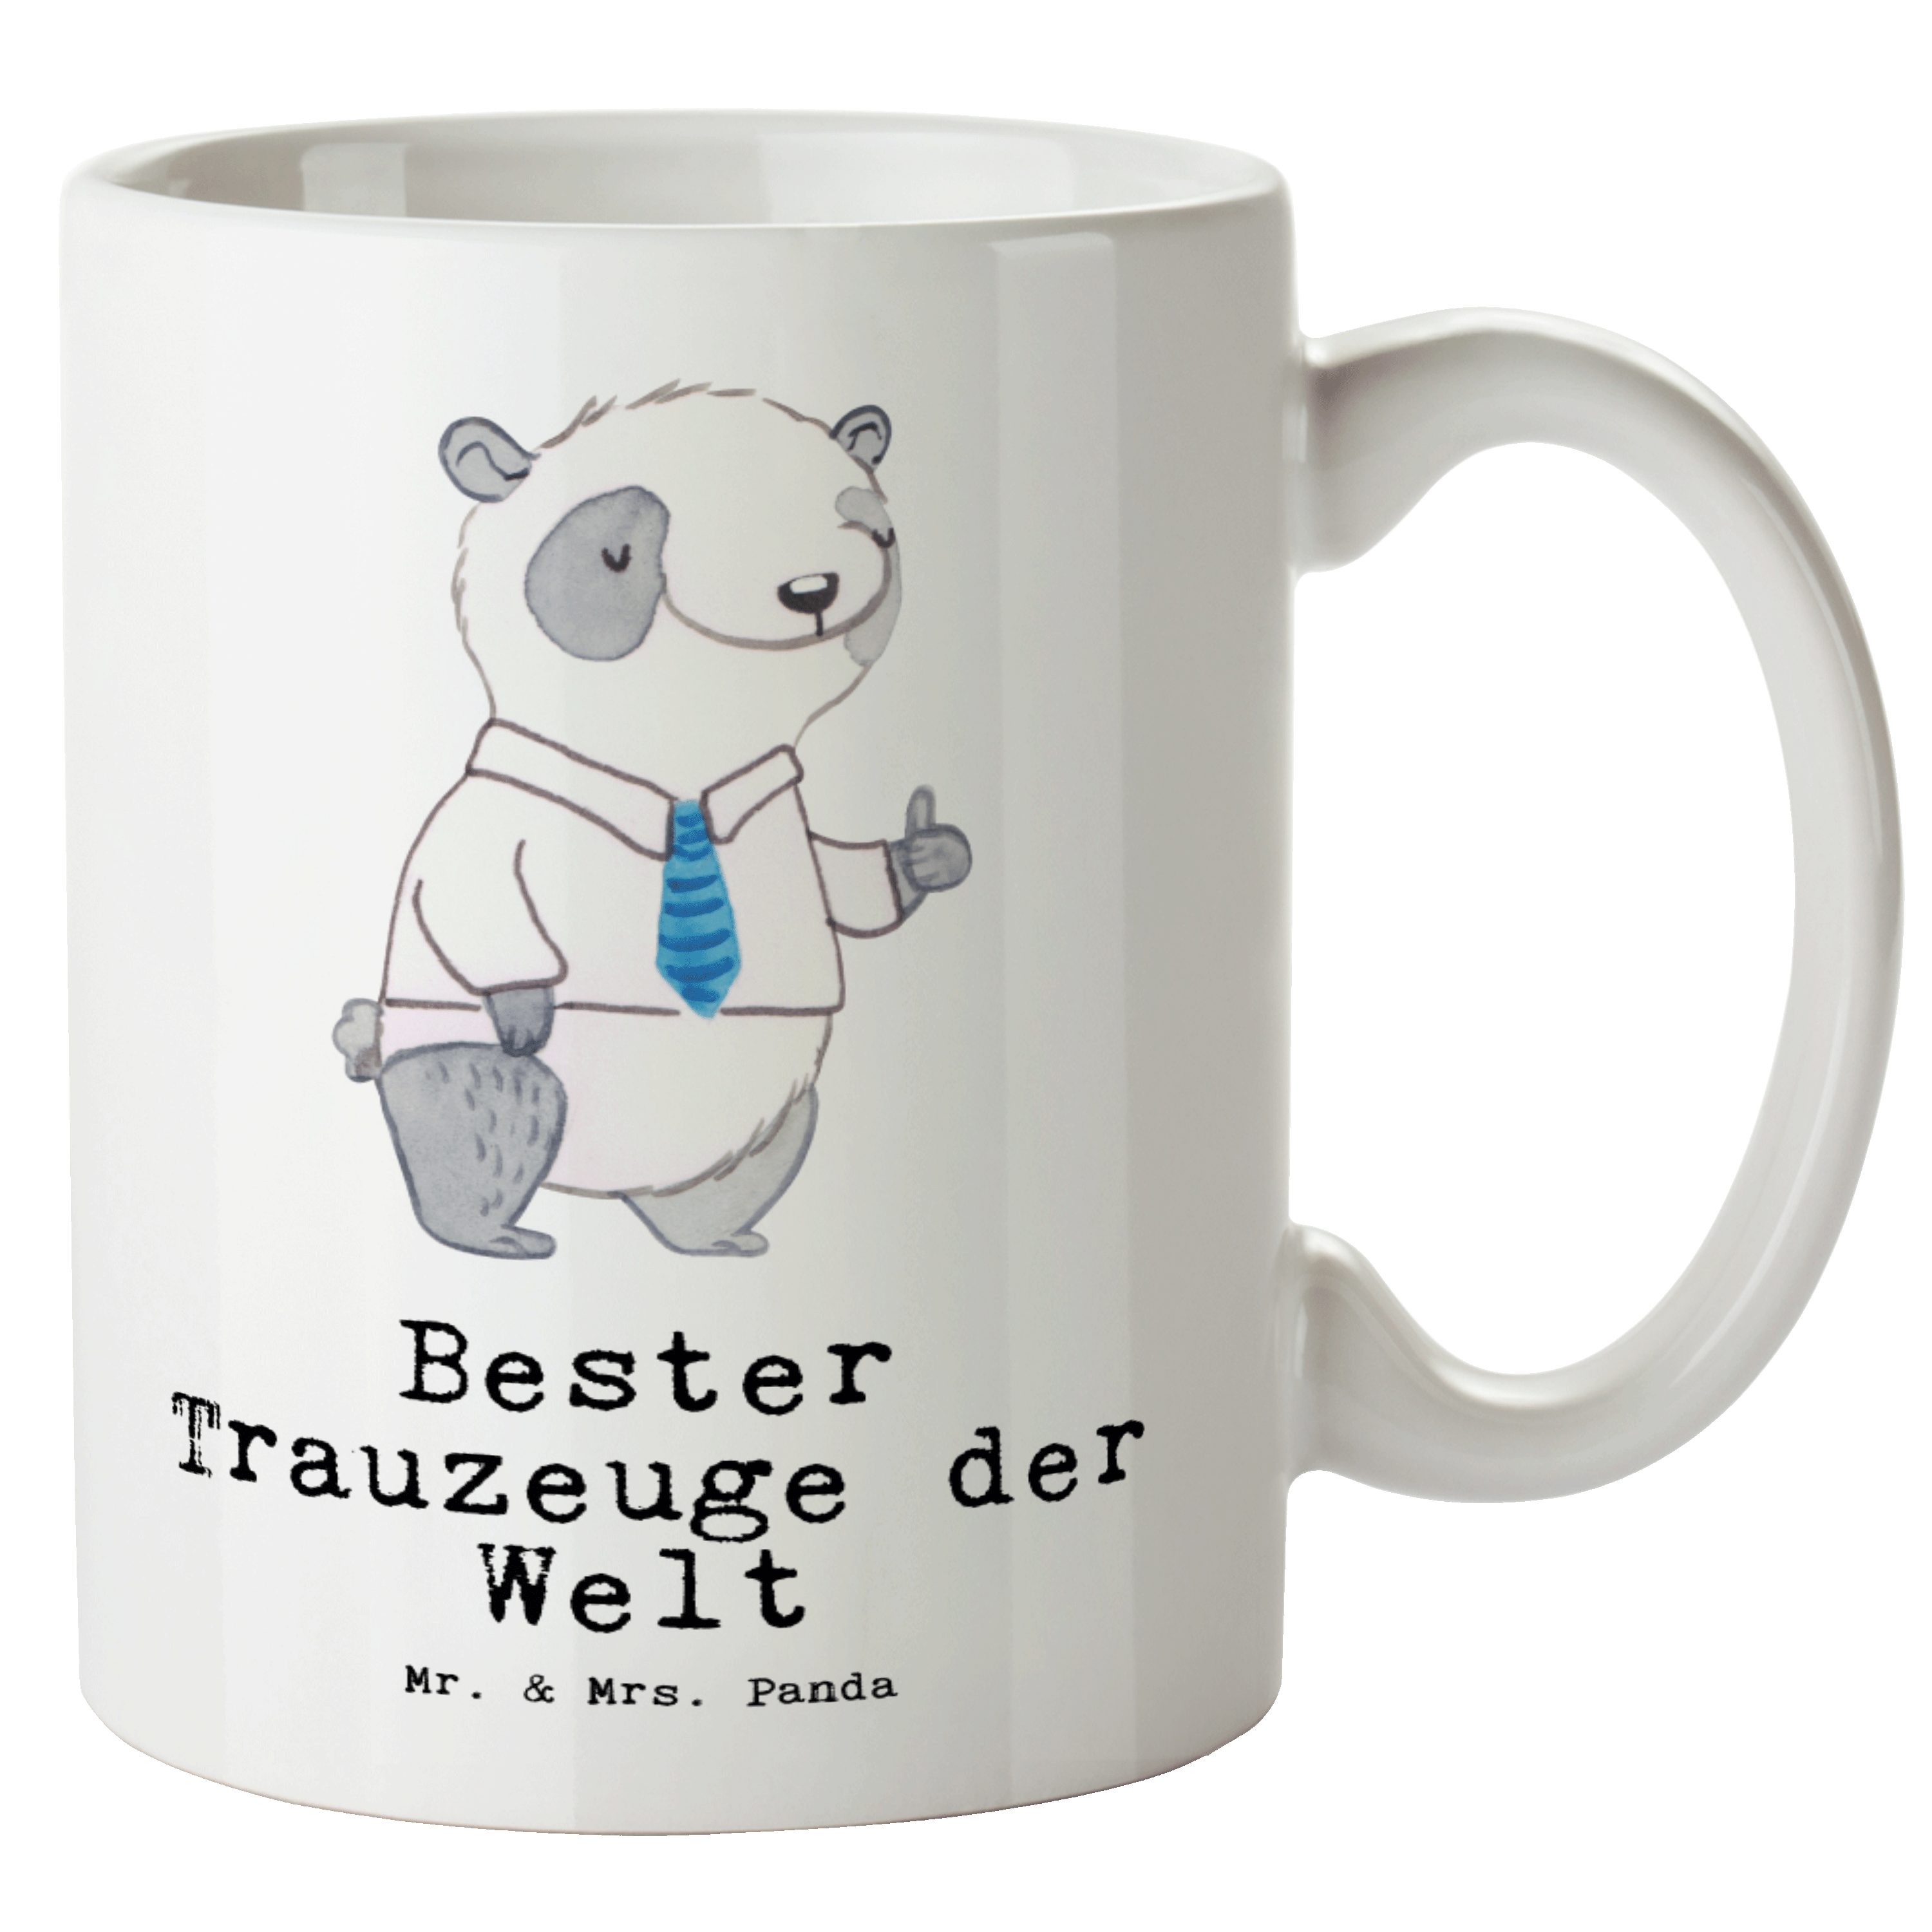 Mr. & Mrs. Panda Tasse Panda Bester Trauzeuge der Welt - Weiß - Geschenk, XL Tasse, XL Teeta, XL Tasse Keramik